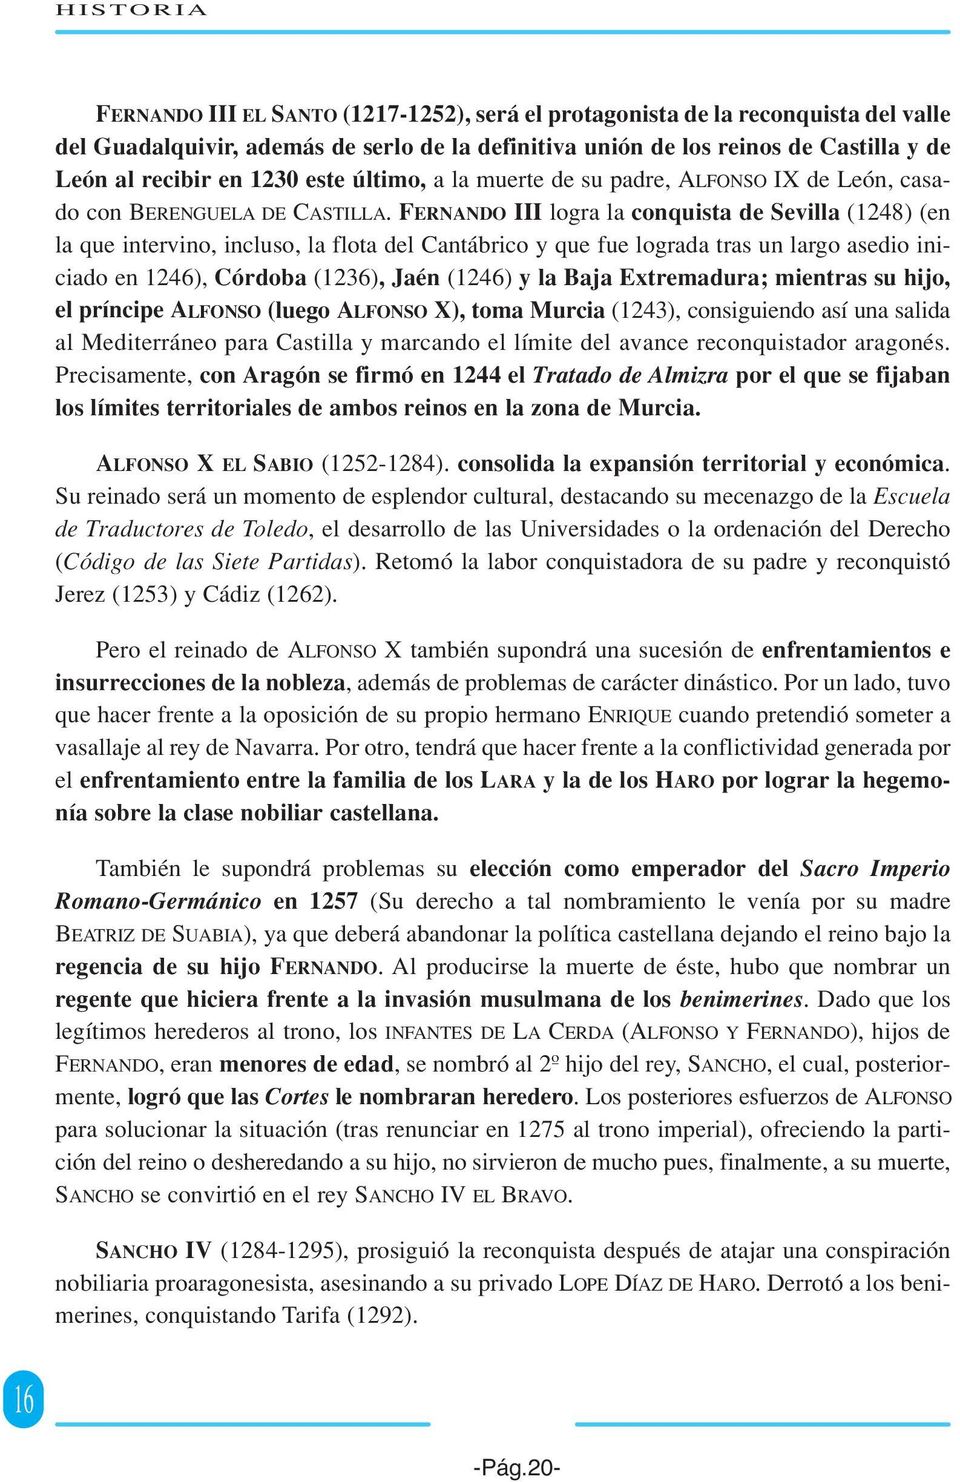 FERNANDO III logra la conquista de Sevilla (1248) (en la que intervino, incluso, la flota del Cantábrico y que fue lograda tras un largo asedio iniciado en 1246), Córdoba (1236), Jaén (1246) y la